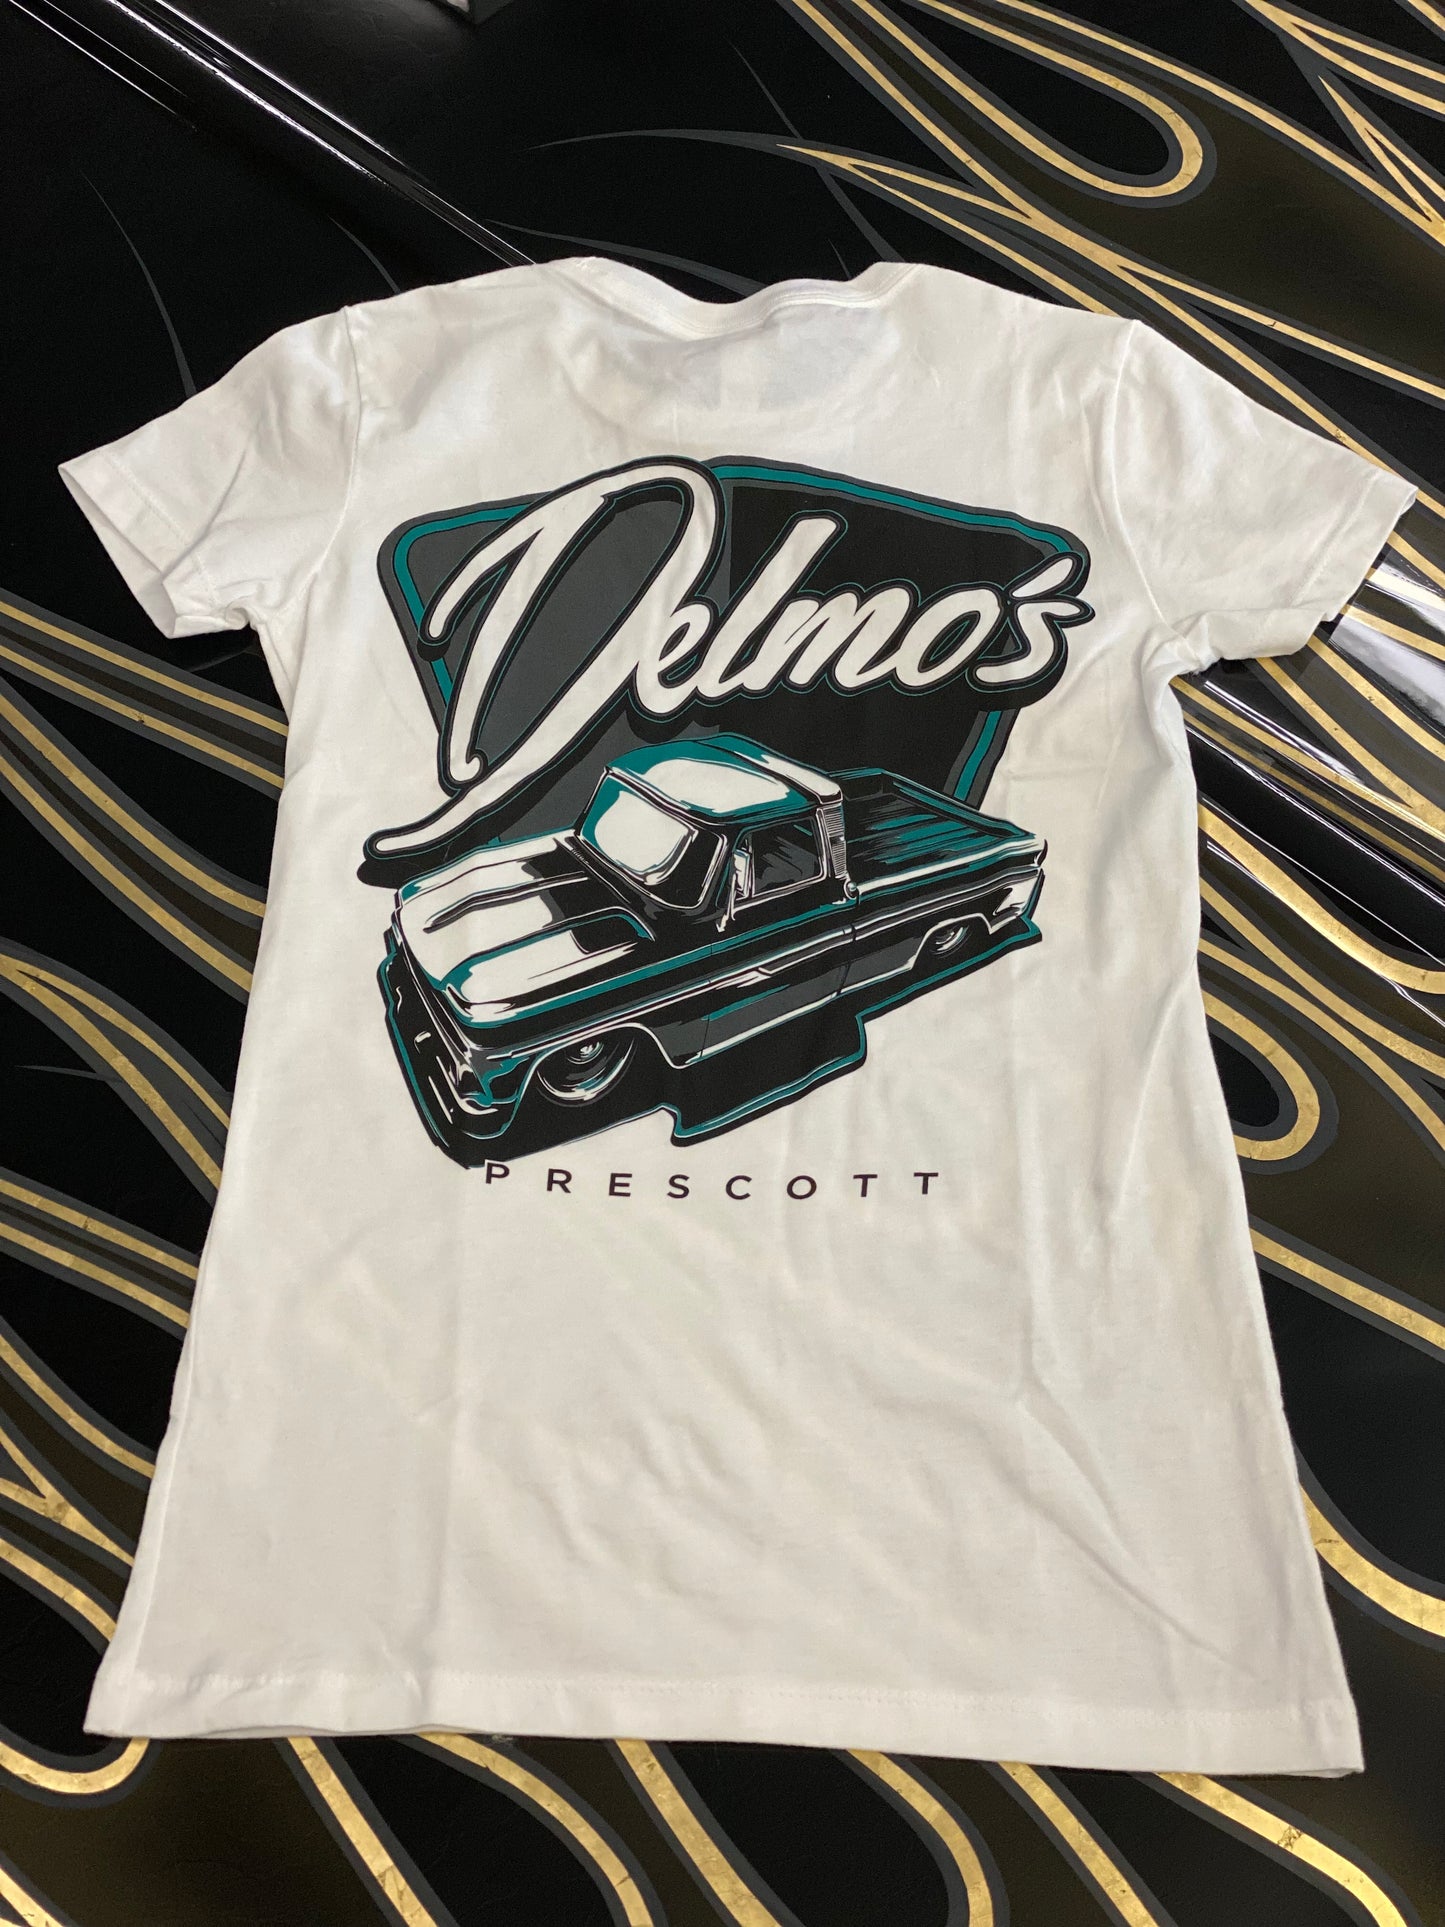 Delmo's Womens White Prescott Crew Neck T-Shirt